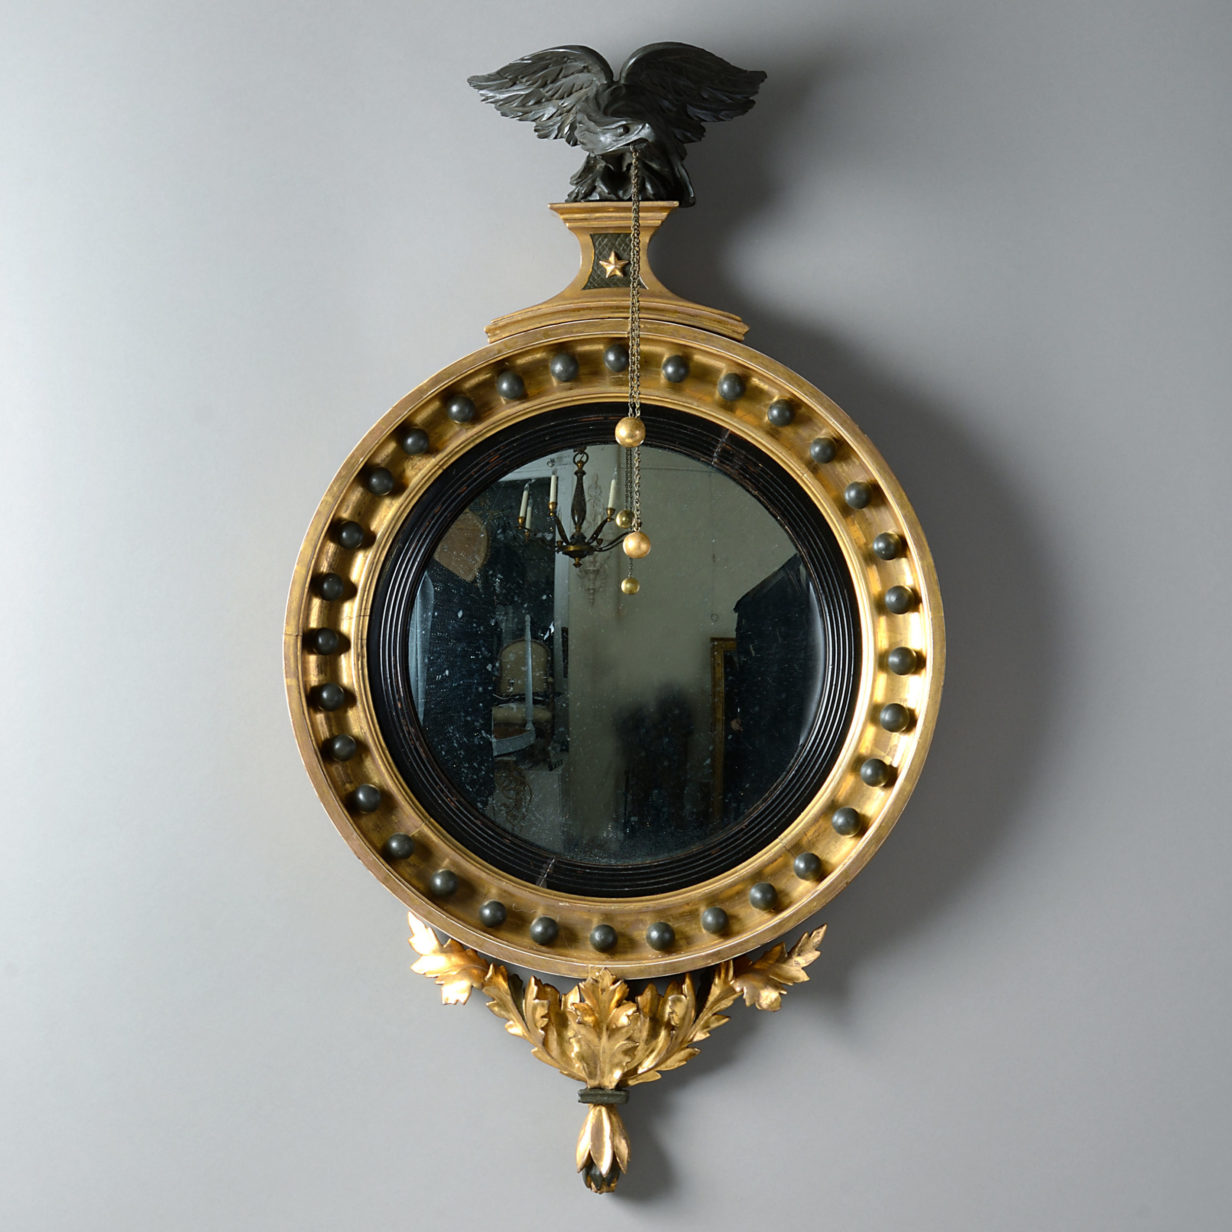 A 19th century regency period convex mirror